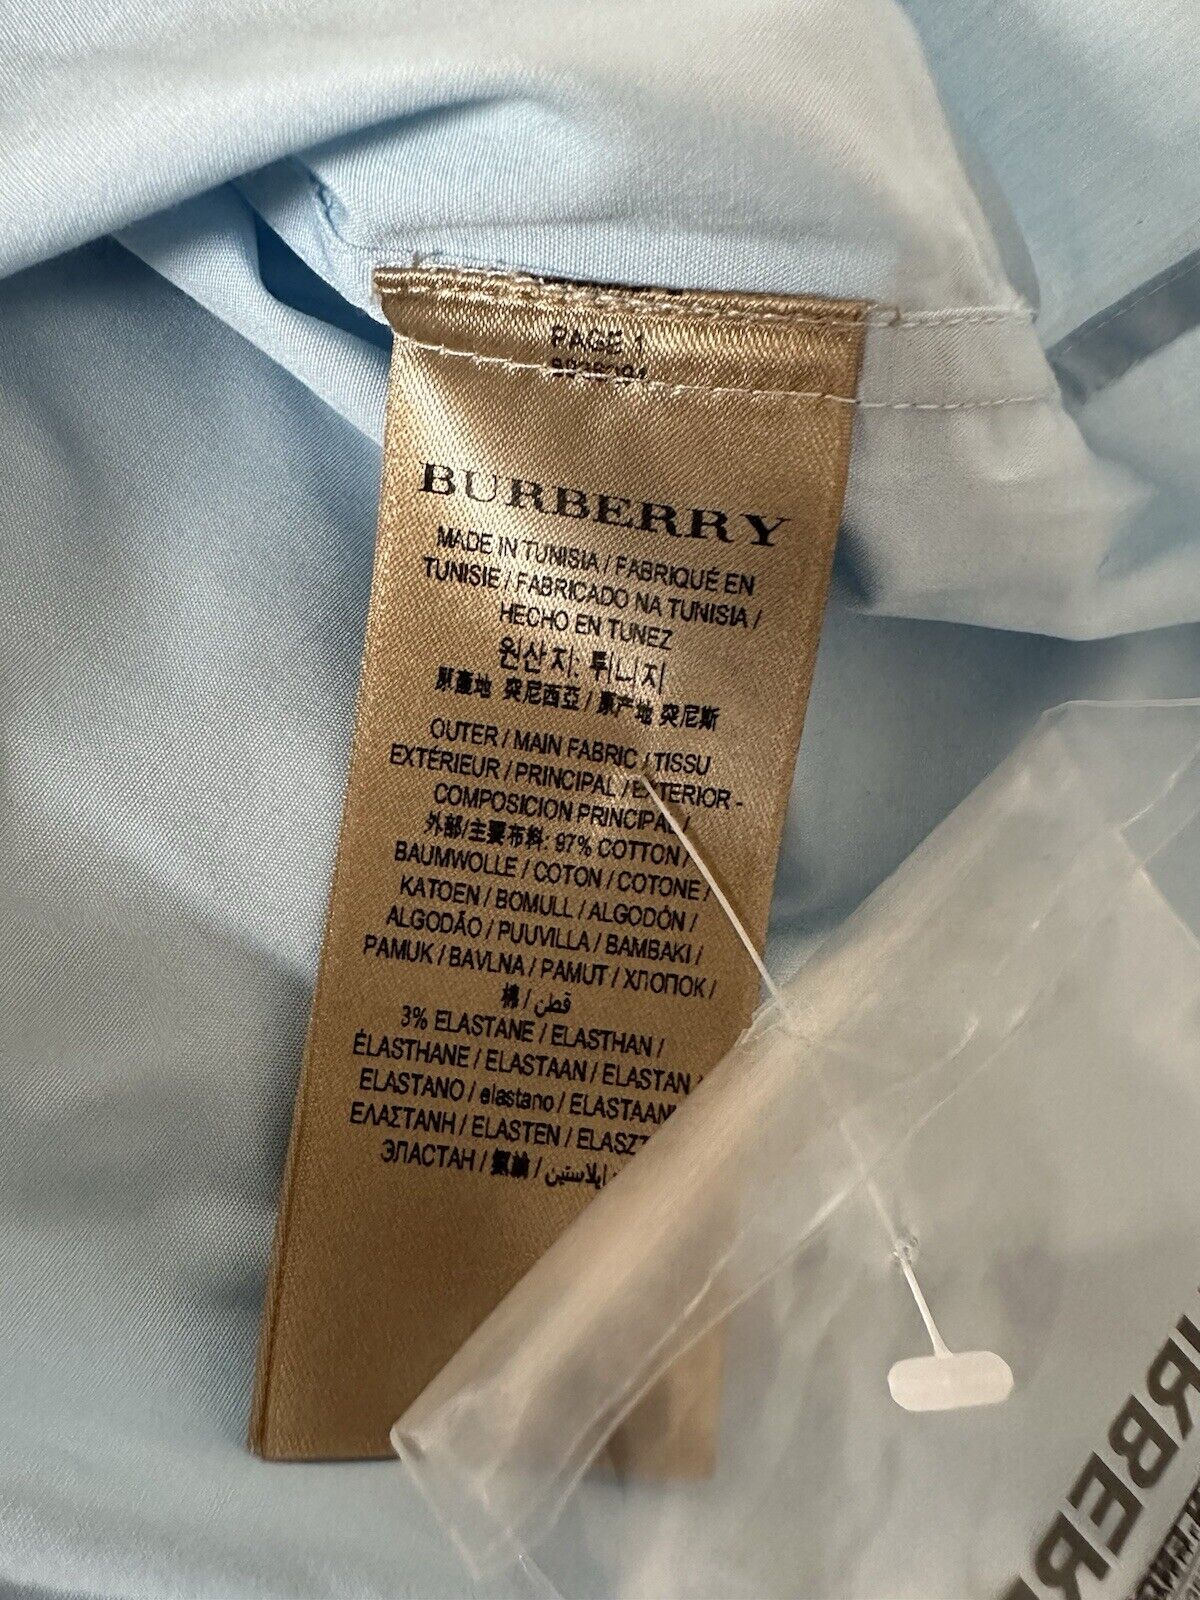 Burberry Cambridge Men's Pale Blue Cotton Button-Up Shirt 2XL 8036294 NWT $390